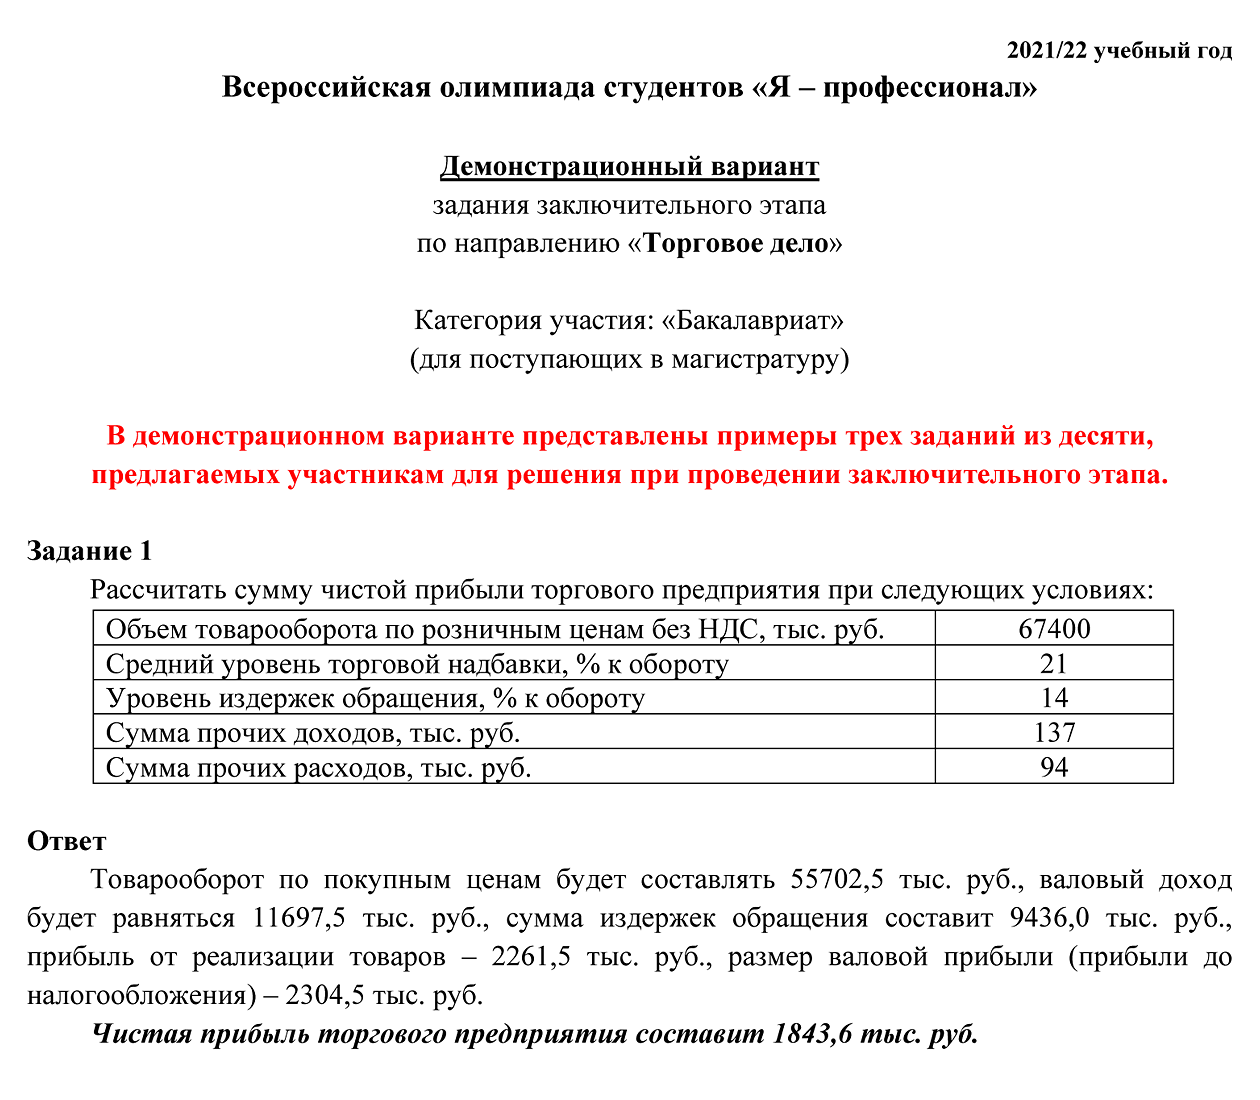 Пример задания из демоверсии заключительного этапа по направлению «Торговое дело». Источник: yandex.ru